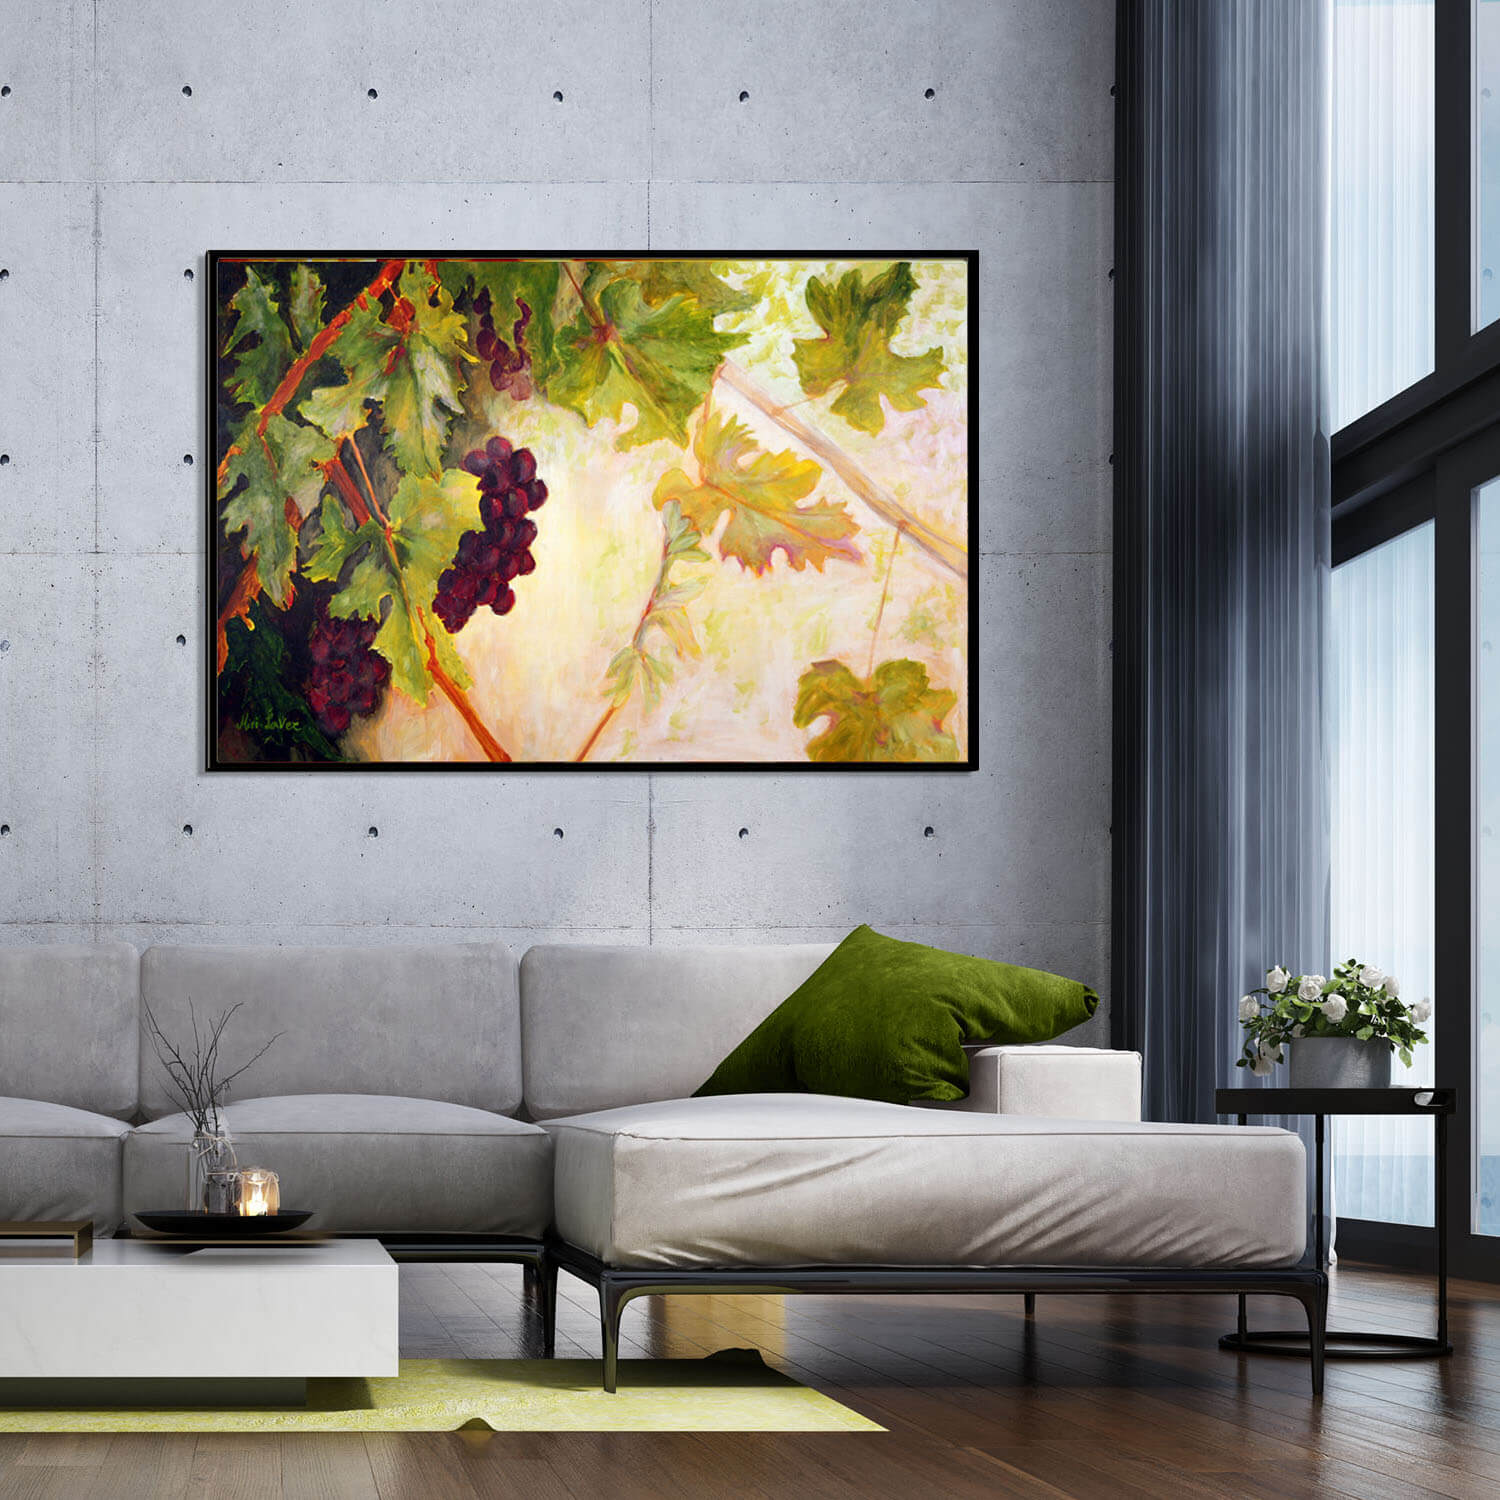 ציור גפן באור זריחה אורגינלי תמונה מעל ספה בסלון ציירת מירי לביא